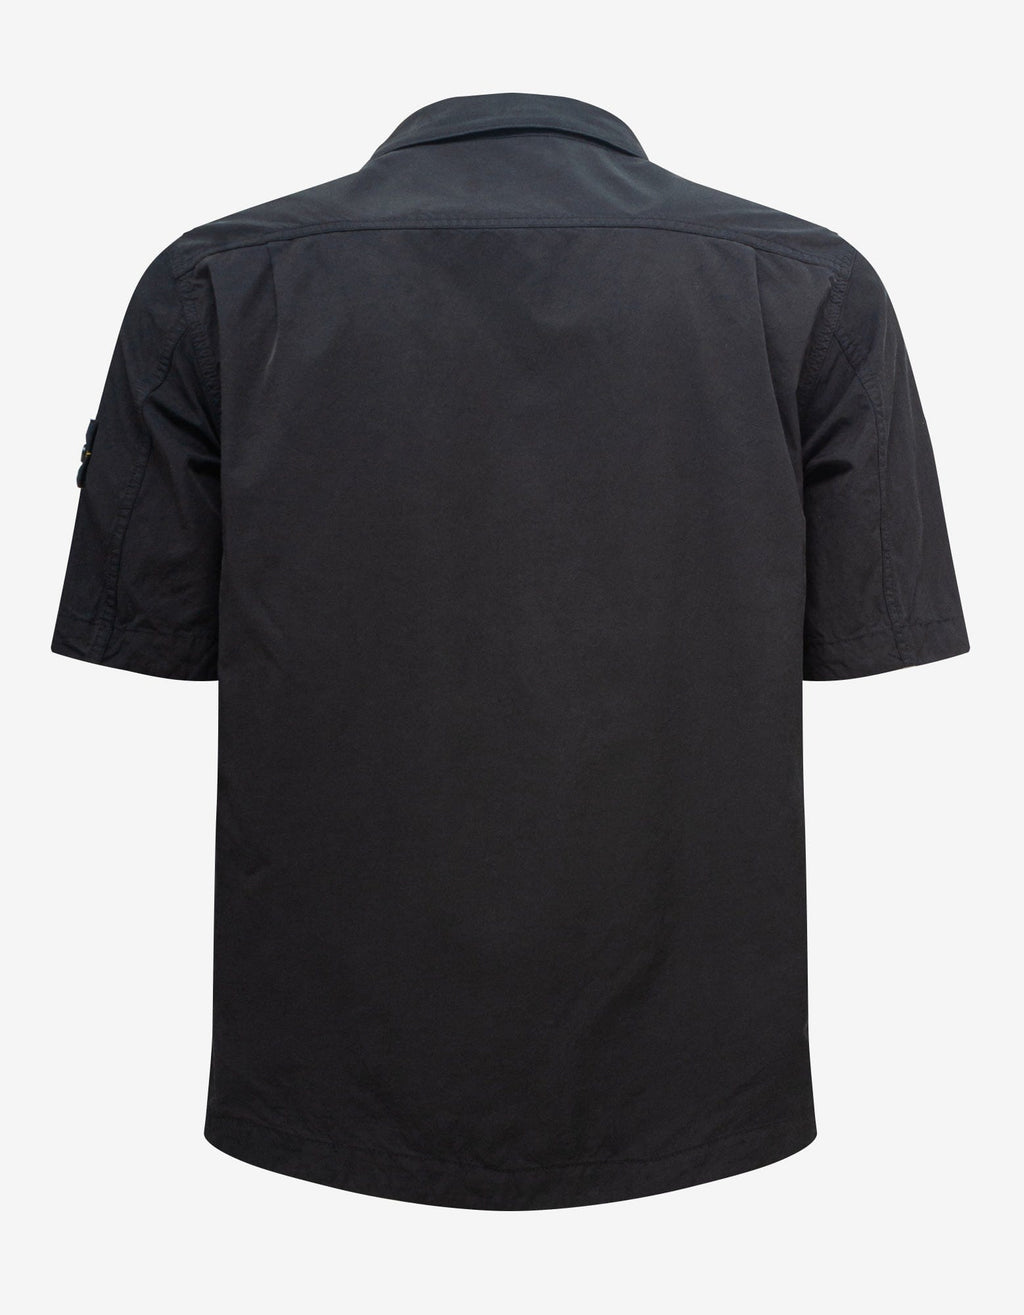 Stone Island Black Short Sleeve Overshirt